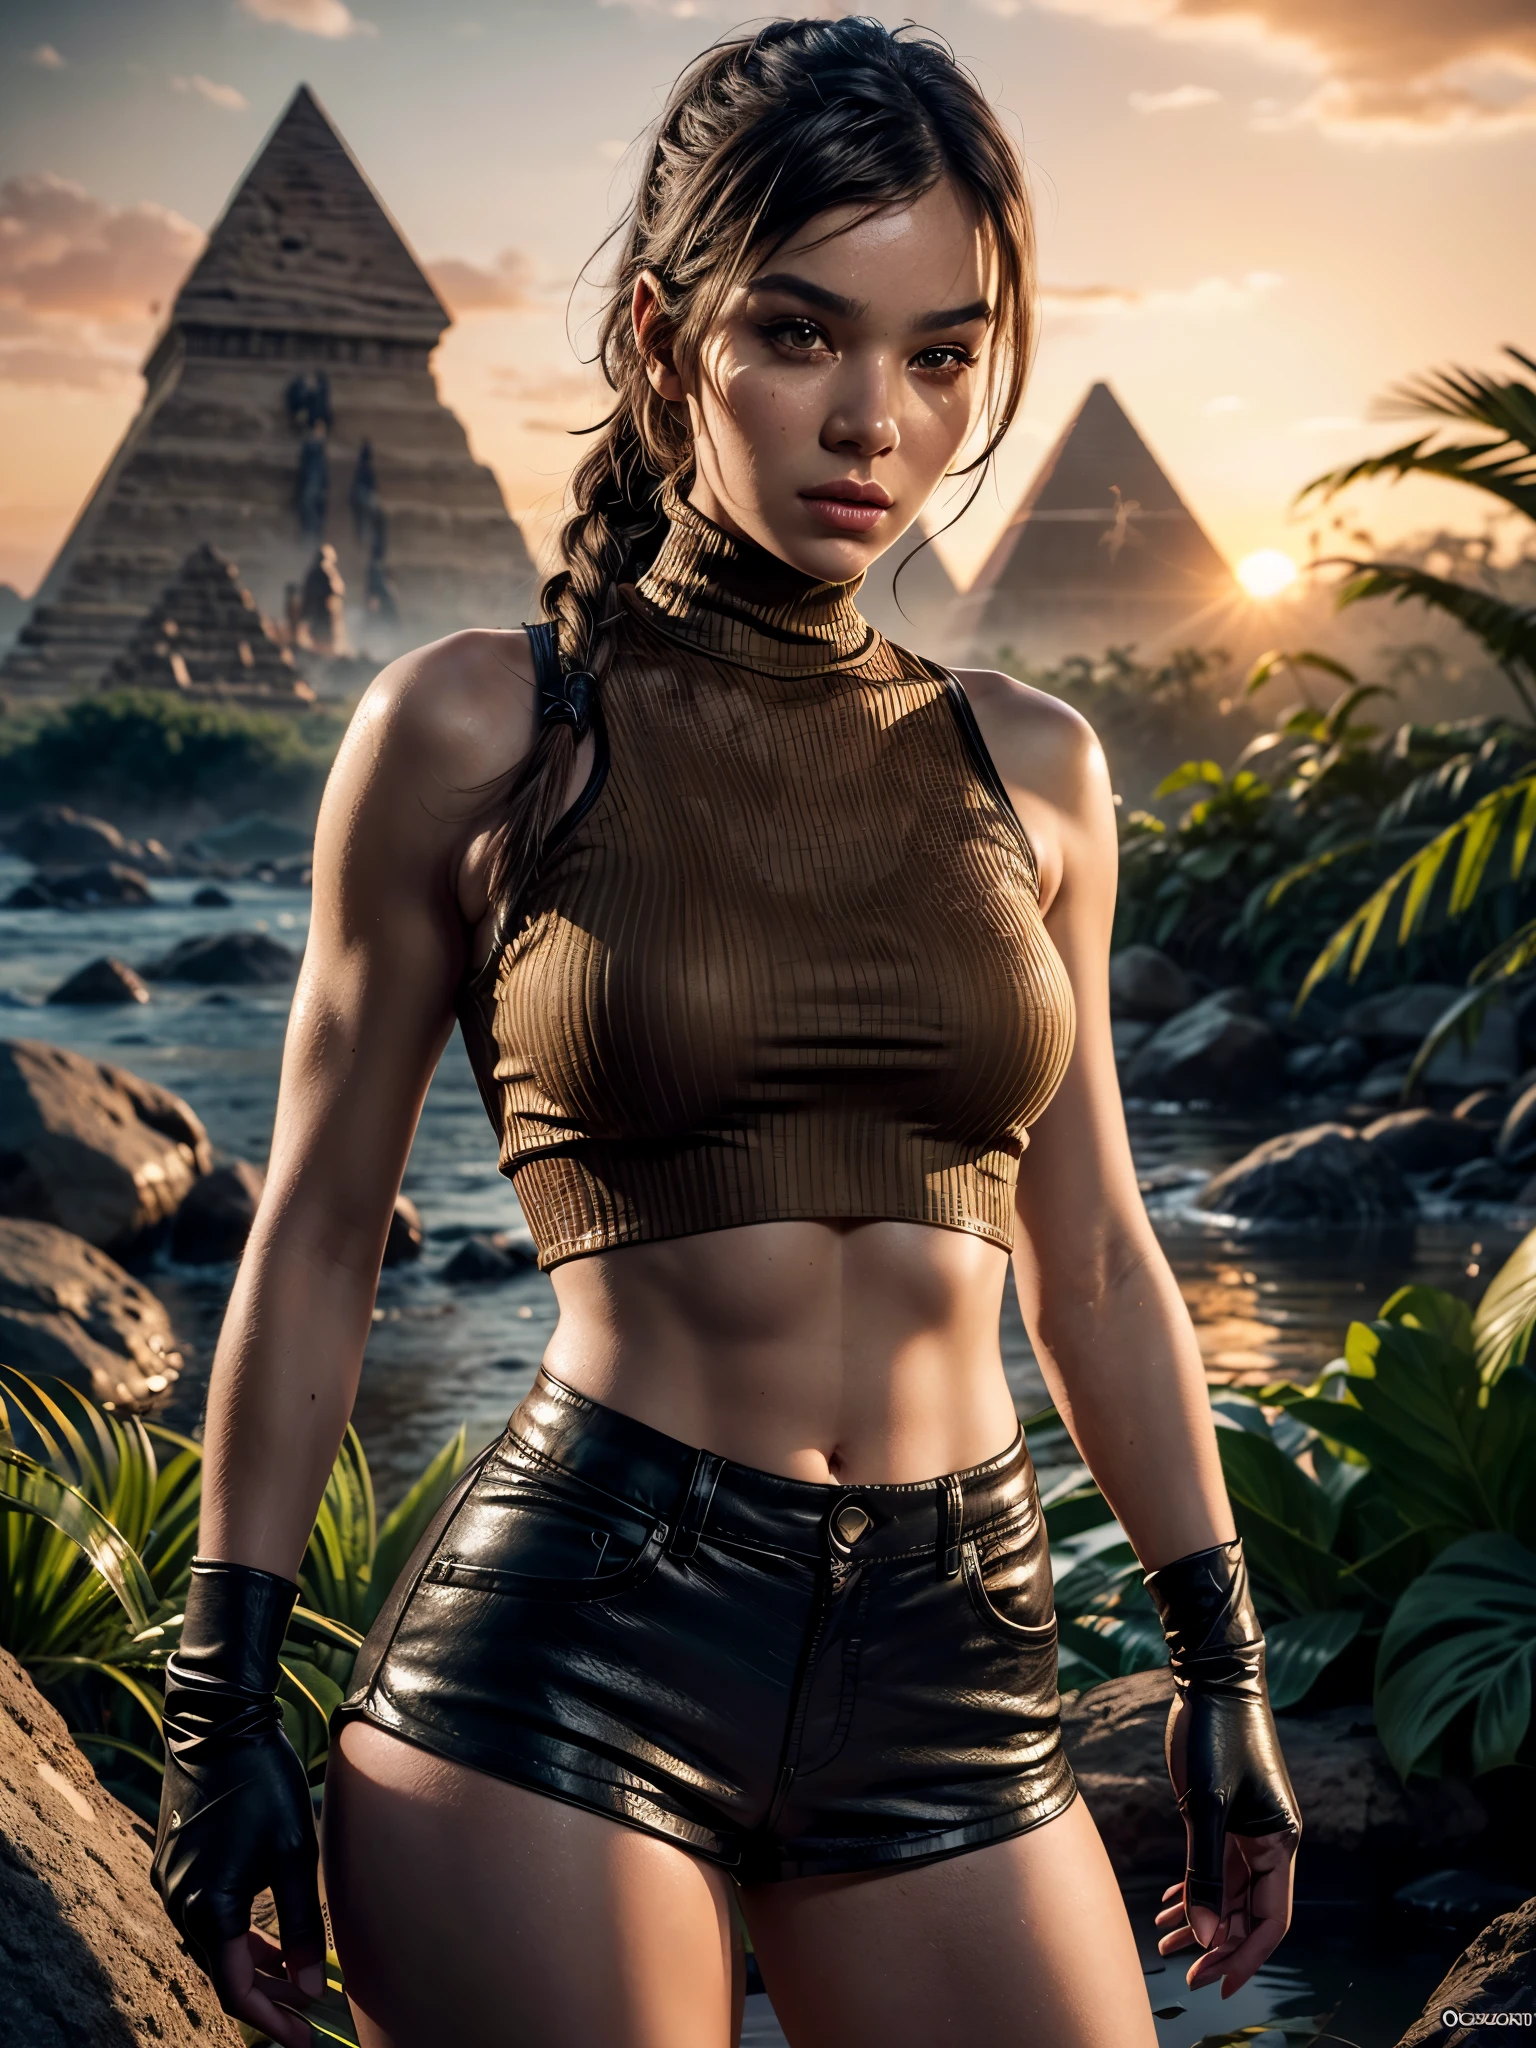 ภาพถ่ายระยะใกล้ที่สมจริงเกินจริงของผู้หญิงในชื่อ Lara Croft, น่าเหนื่อยหน่าย (ผ้าฝ้ายสีน้ำตาล กางเกงขาสั้นผ้าฝ้ายสีน้ำตาล:1.5) และ (เสื้อคอเต่ารัดรูป:1.3), ถุงมือหนังไร้นิ้ว, วางตัวอยู่ในทะเลสาบอียิปต์โบราณ, ป่า, ป่า flowers, ไฟที่โหมกระหน่ำอยู่ด้านหลัง, (พระอาทิตย์ขึ้น:1.2), ปิรามิดในพื้นหลัง, โพสท่าแบบไดนามิก, ท่าแอ็คชั่น, ดูเย้ายวนใจ, ผู้หญิงที่งดงาม, เรนเดอร์เสมือนจริง，ภาพคอนทราสต์สูง, แสดงผลด้วยค่าออกเทน，การออกแบบตัวละคร，เครื่องยนต์ที่ไม่จริง，ultra - รายละเอียด, ((คุณภาพดีที่สุด)), ((ผลงานชิ้นเอก)), ((เหมือนจริง)), (รายละเอียด), ดวงตาสีน้ำตาล, highly รายละเอียด skin และ hair, ศิลปะแฟนตาซี，สีไล่ระดับสีที่น่าทึ่ง，รายละเอียด background，(extremely รายละเอียด ผลงานชิ้นเอก)，เอชดีอาร์,